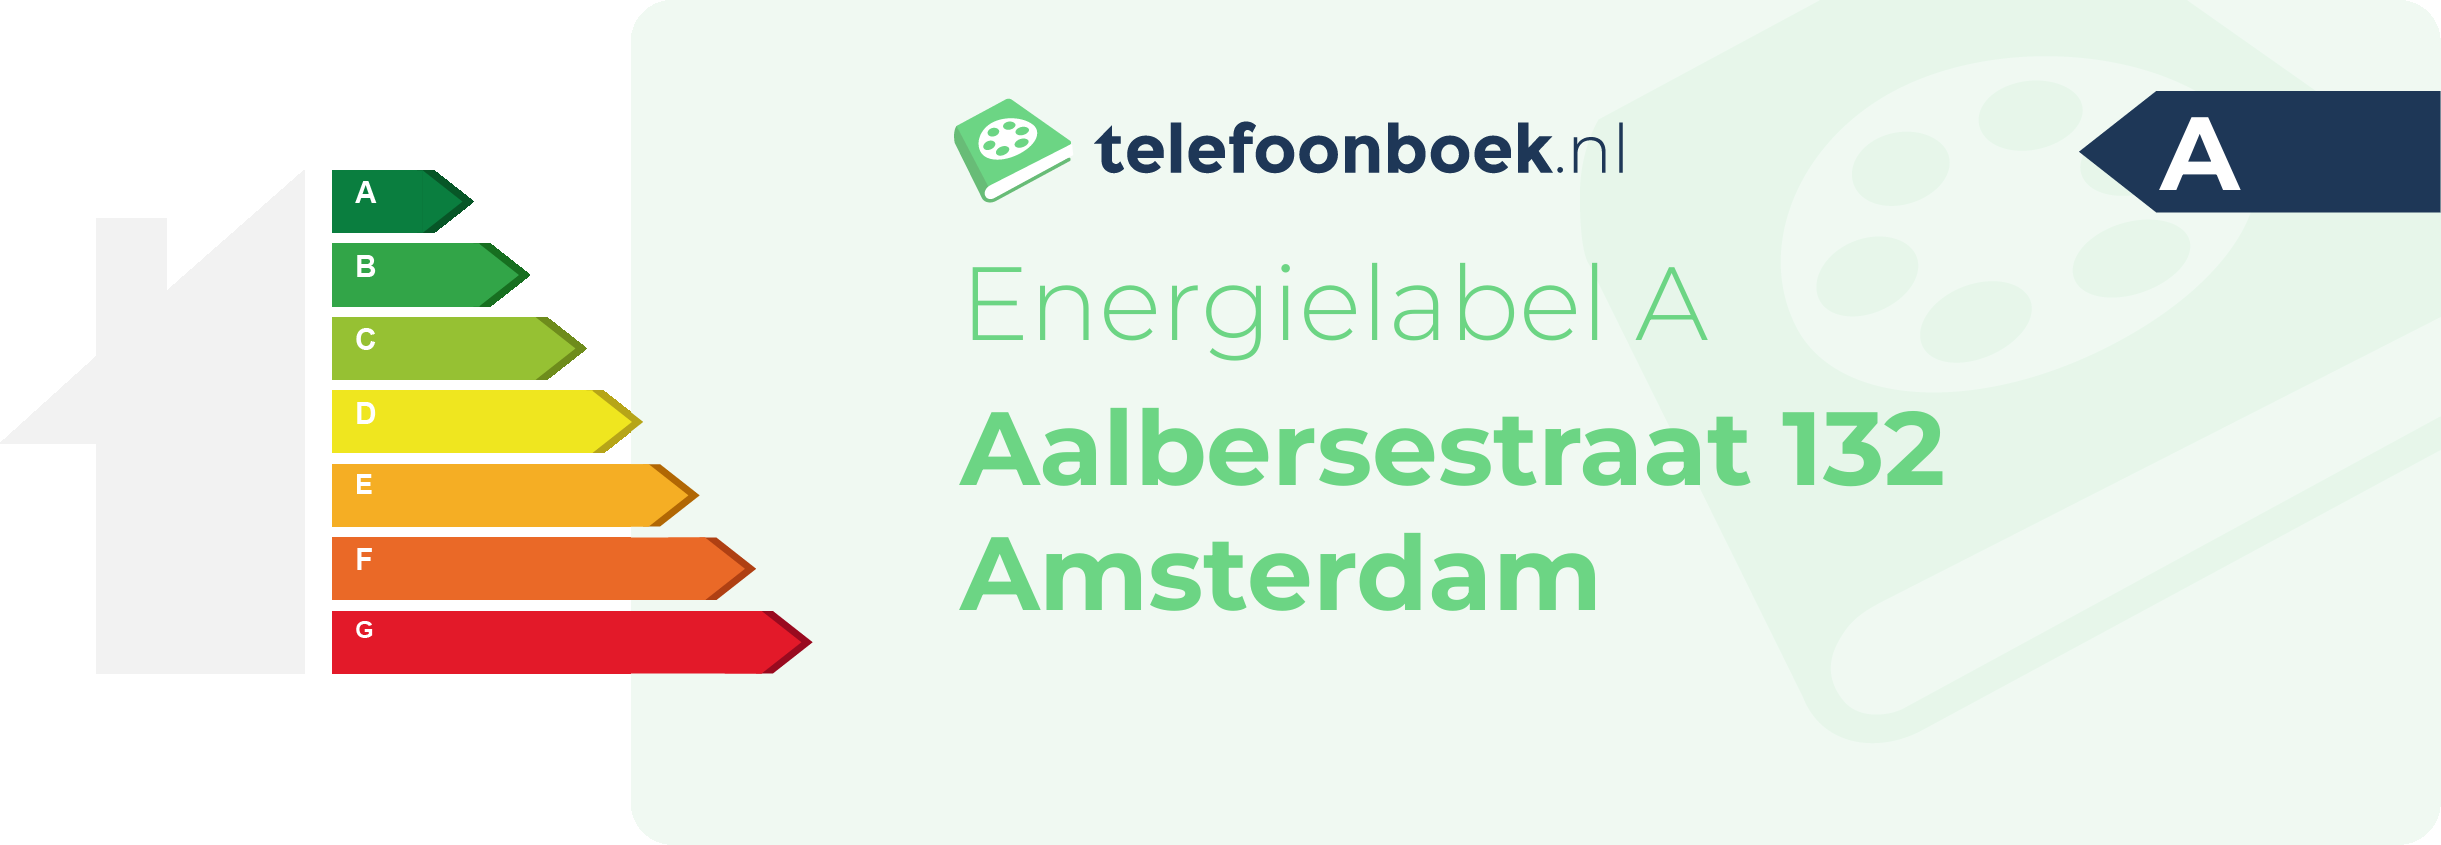 Energielabel Aalbersestraat 132 Amsterdam